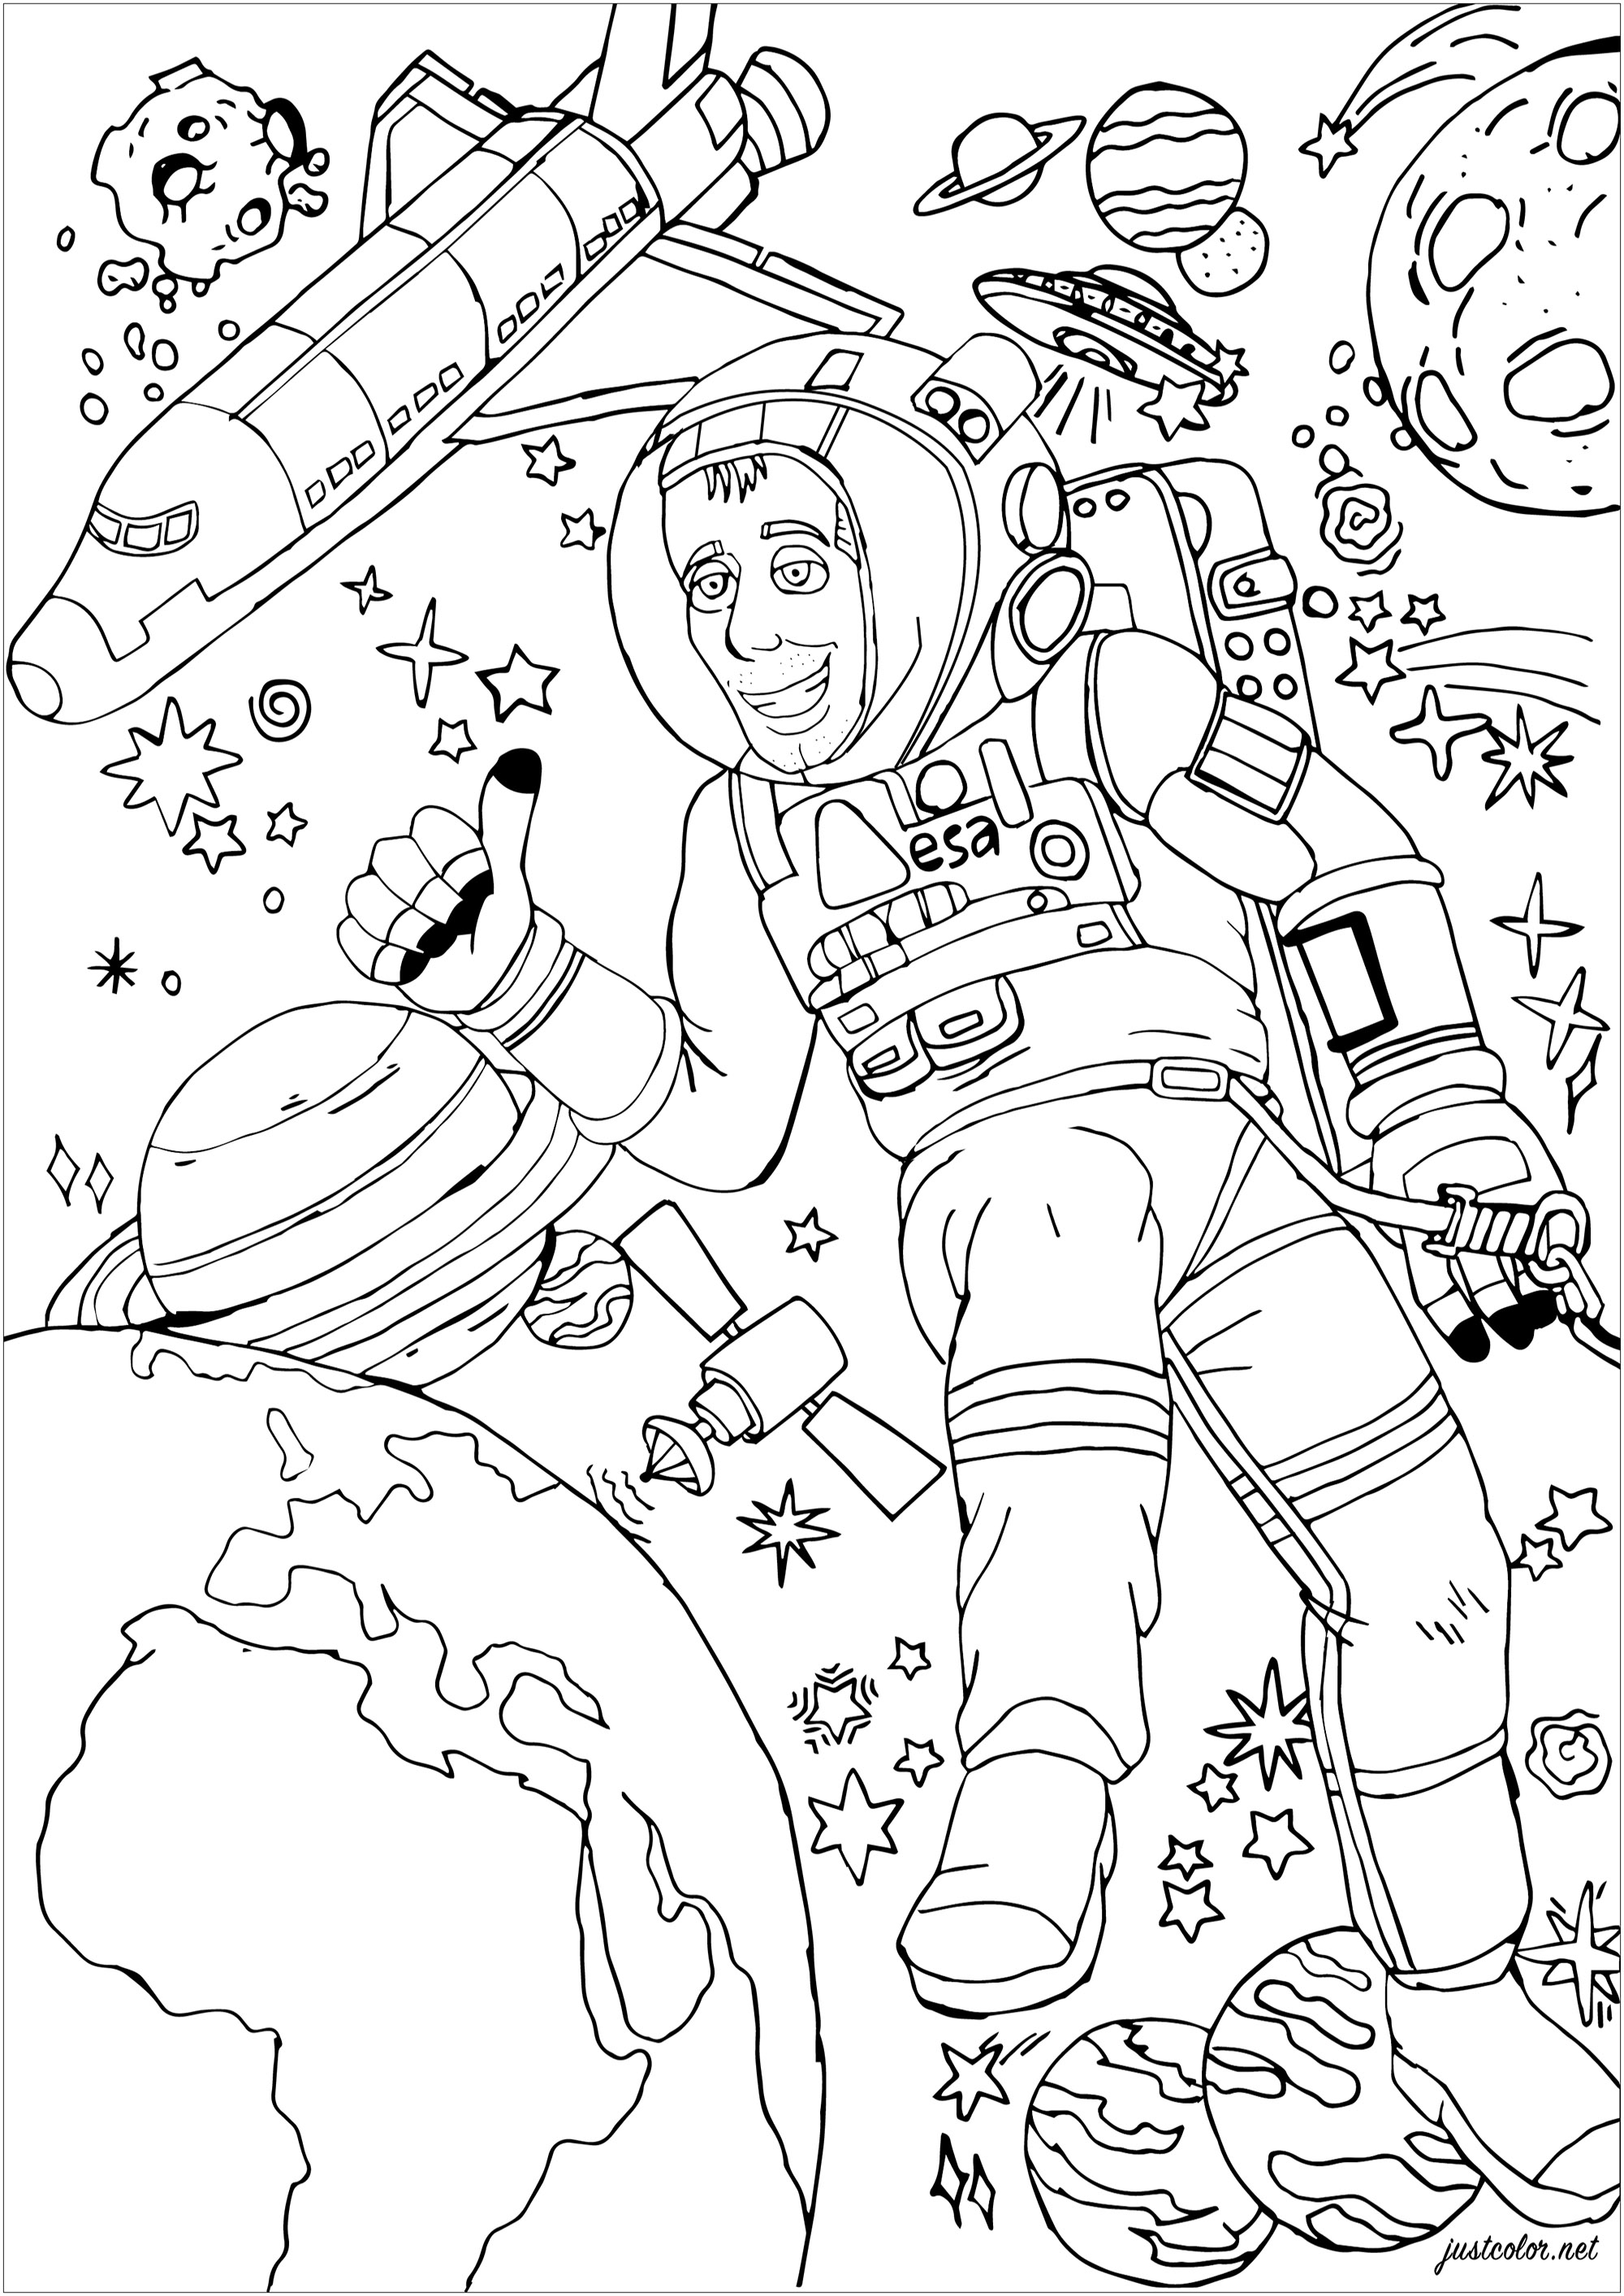 Astronauta Thomas Pesquet durante uma caminhada espacial, Artista : Morgan